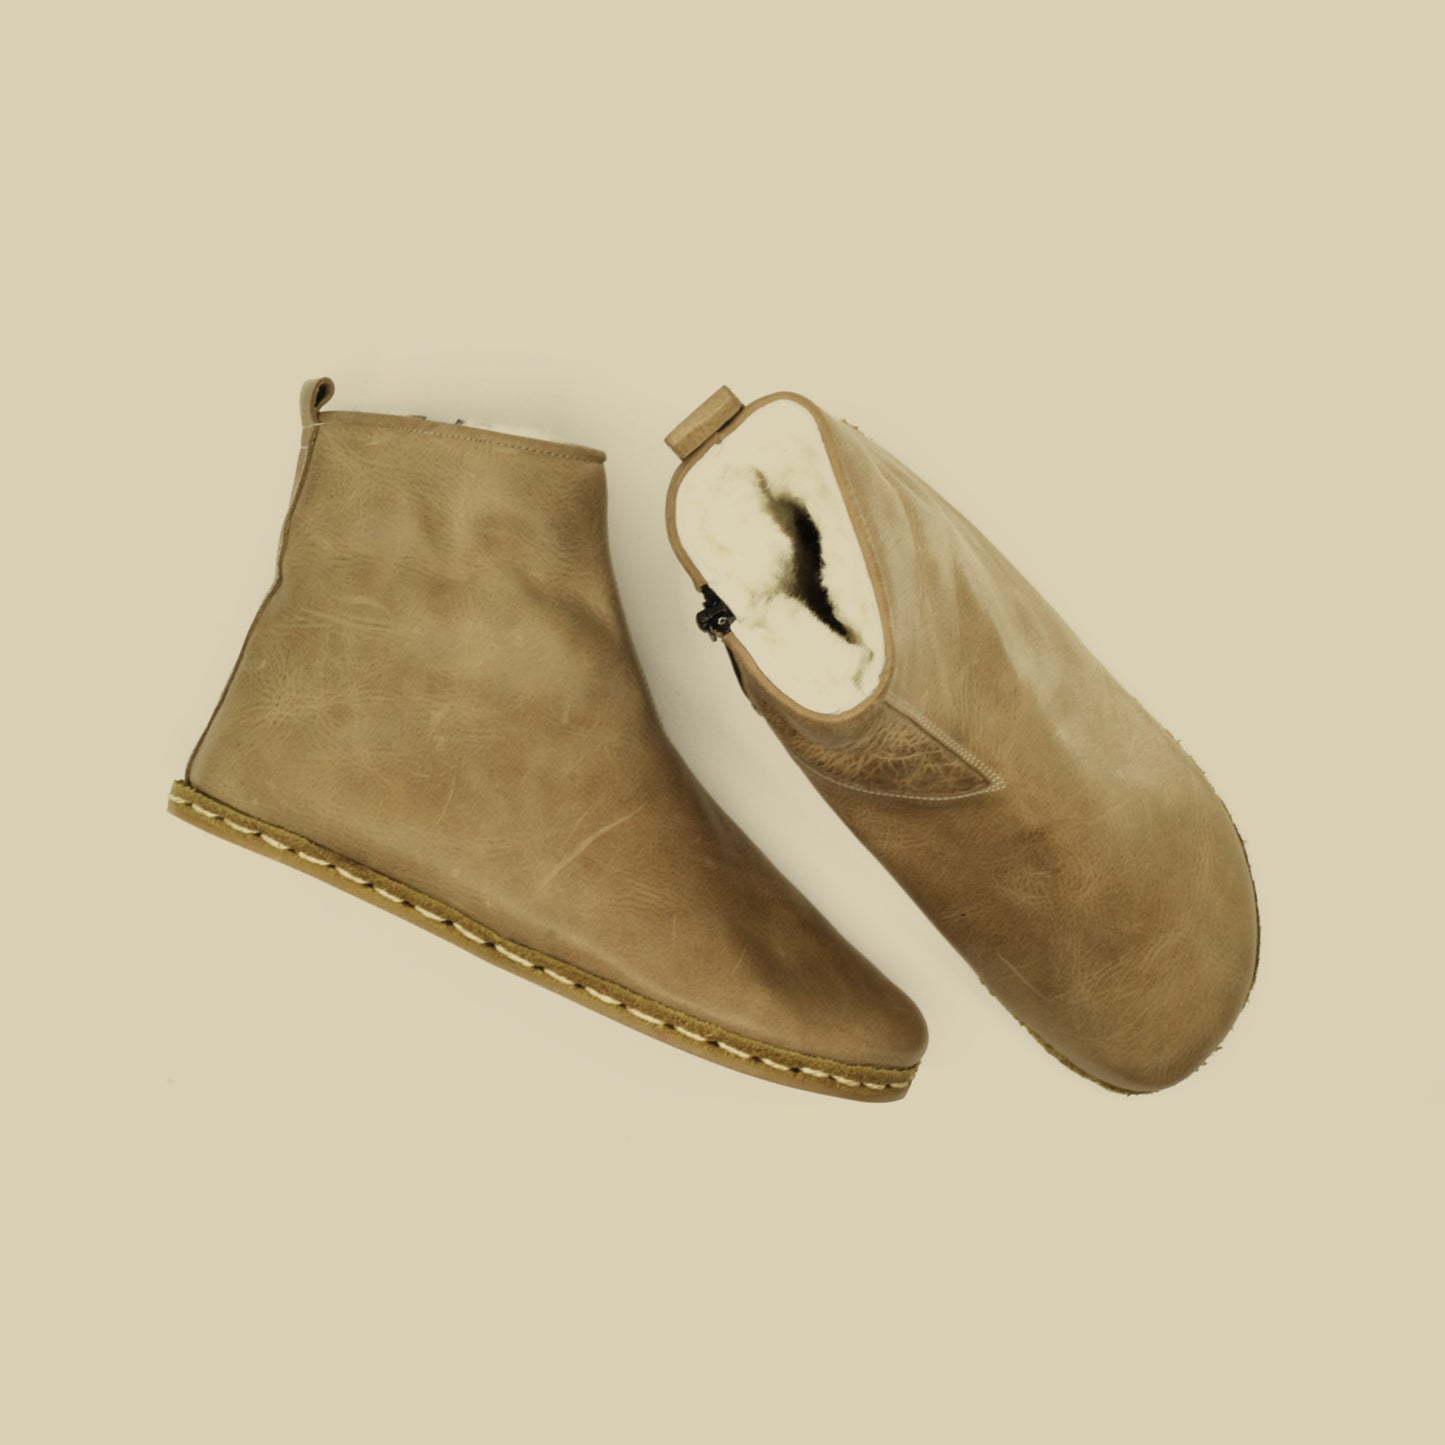 Men's Burgundy Fur-Lined Barefoot Boot - Handmade Zero Drop